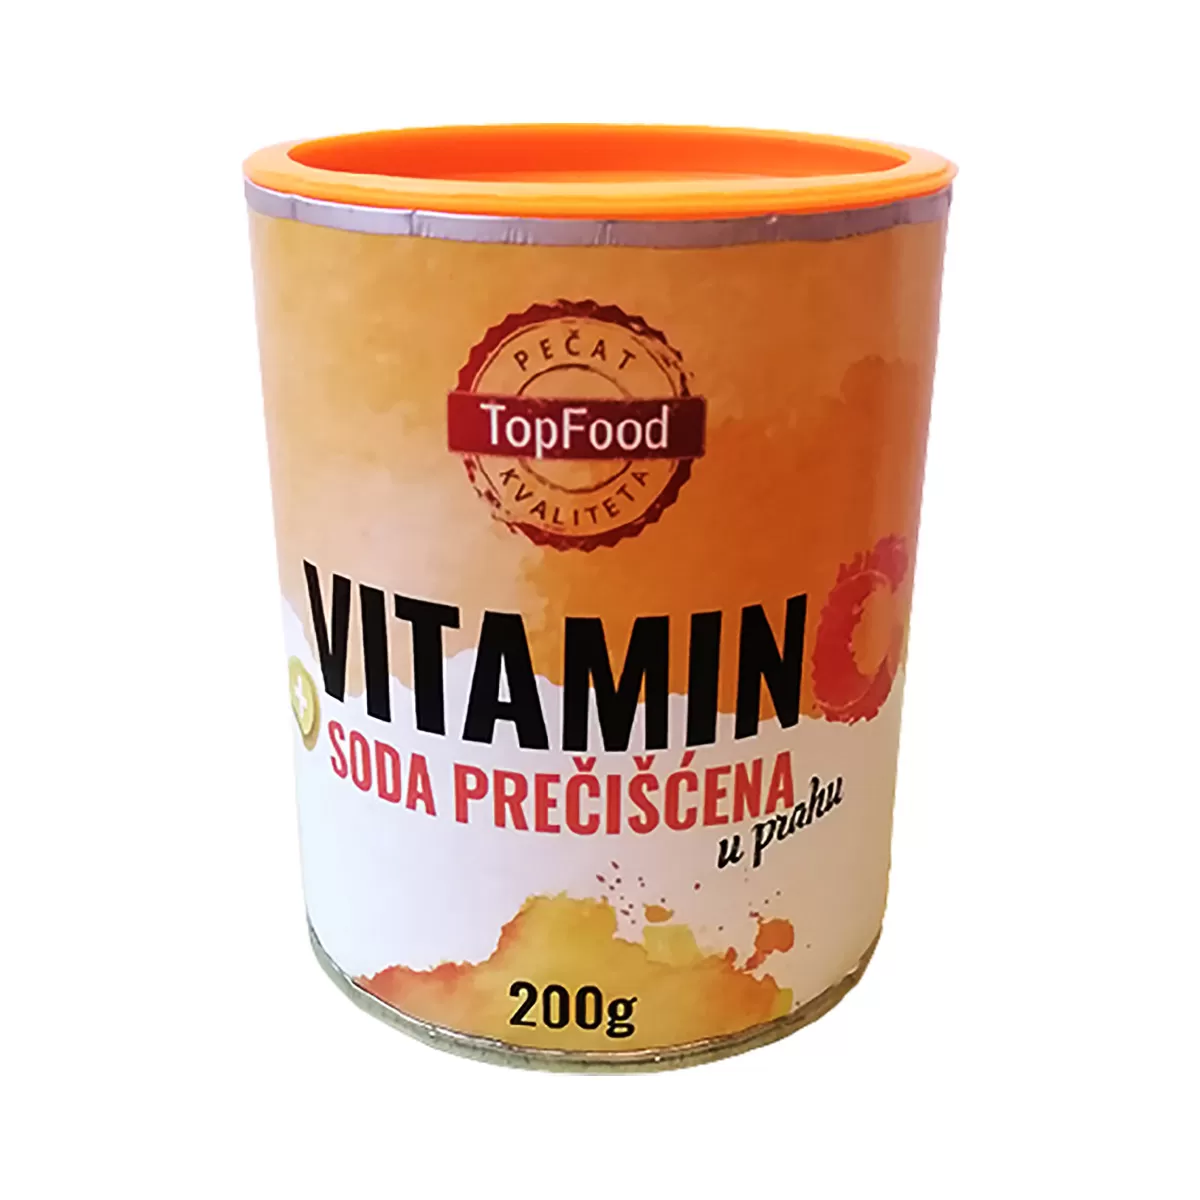 Vitamin C i prečišćena soda bikarbona, 200g 